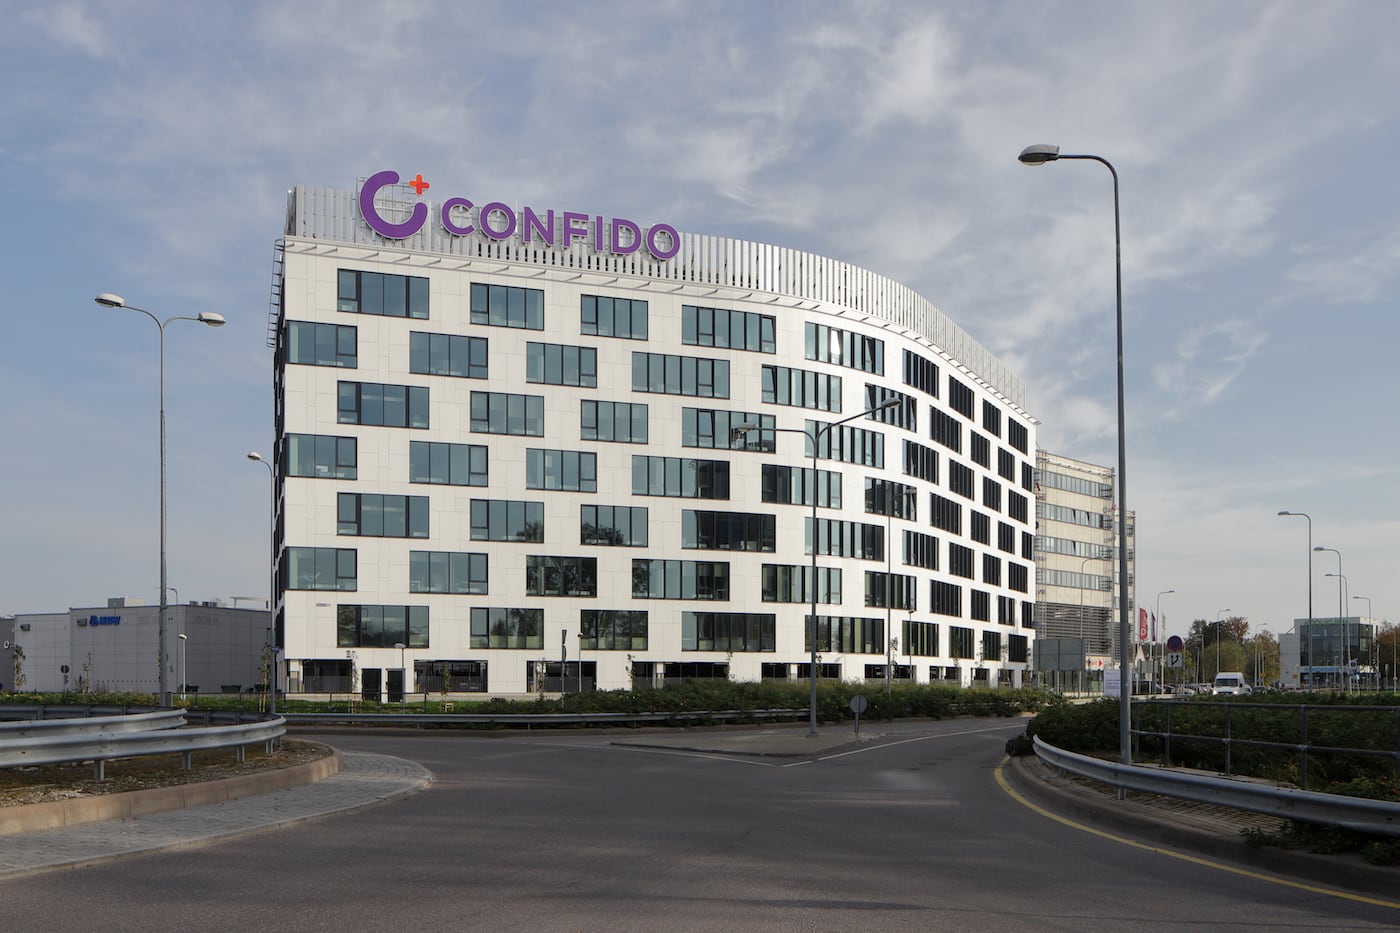 Confido medical centre in Tallinn, 2020